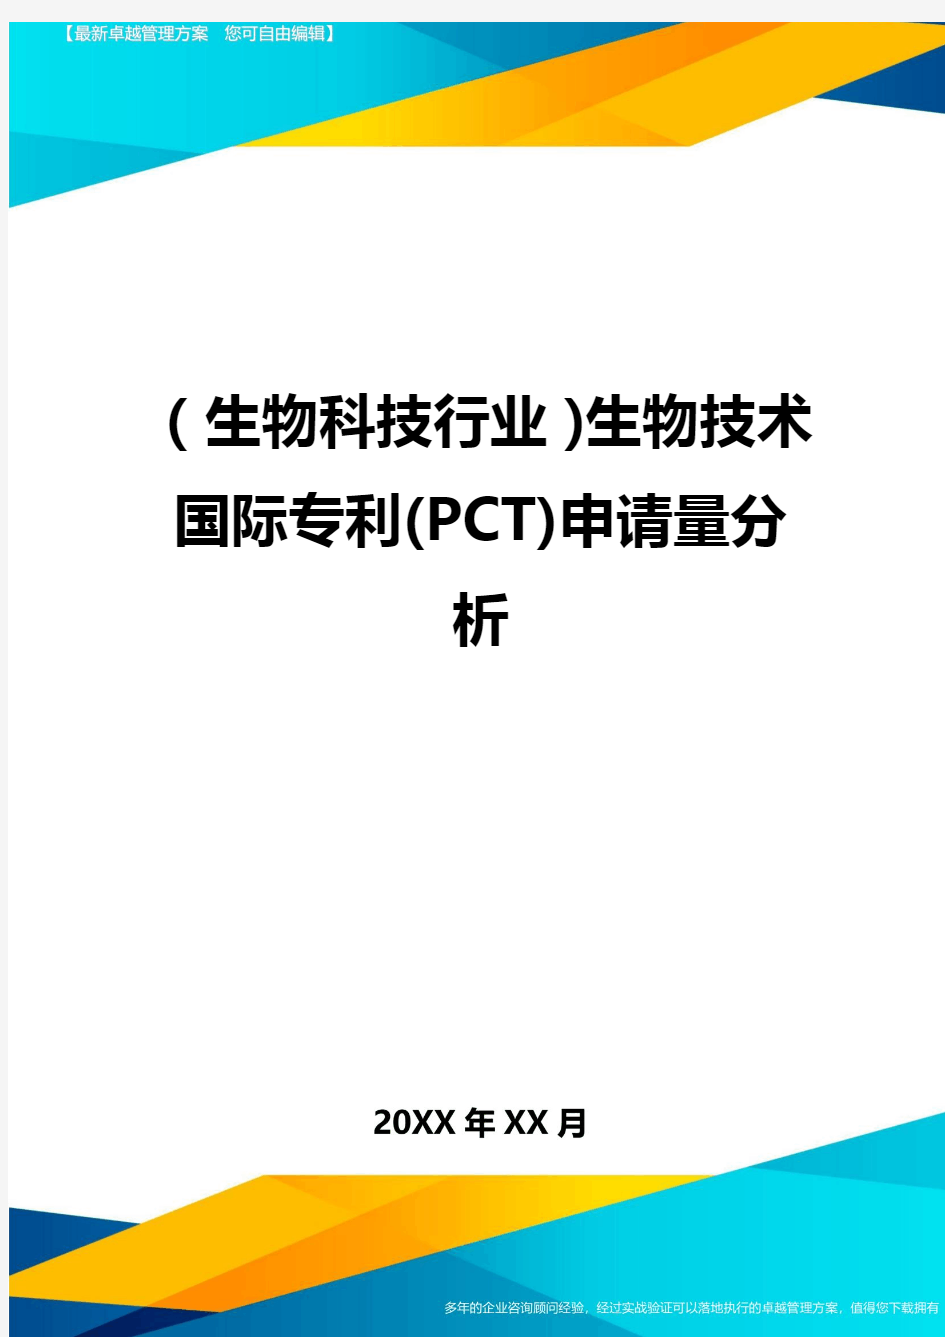 2020年(生物科技行业)生物技术国际专利(PCT)申请量分析